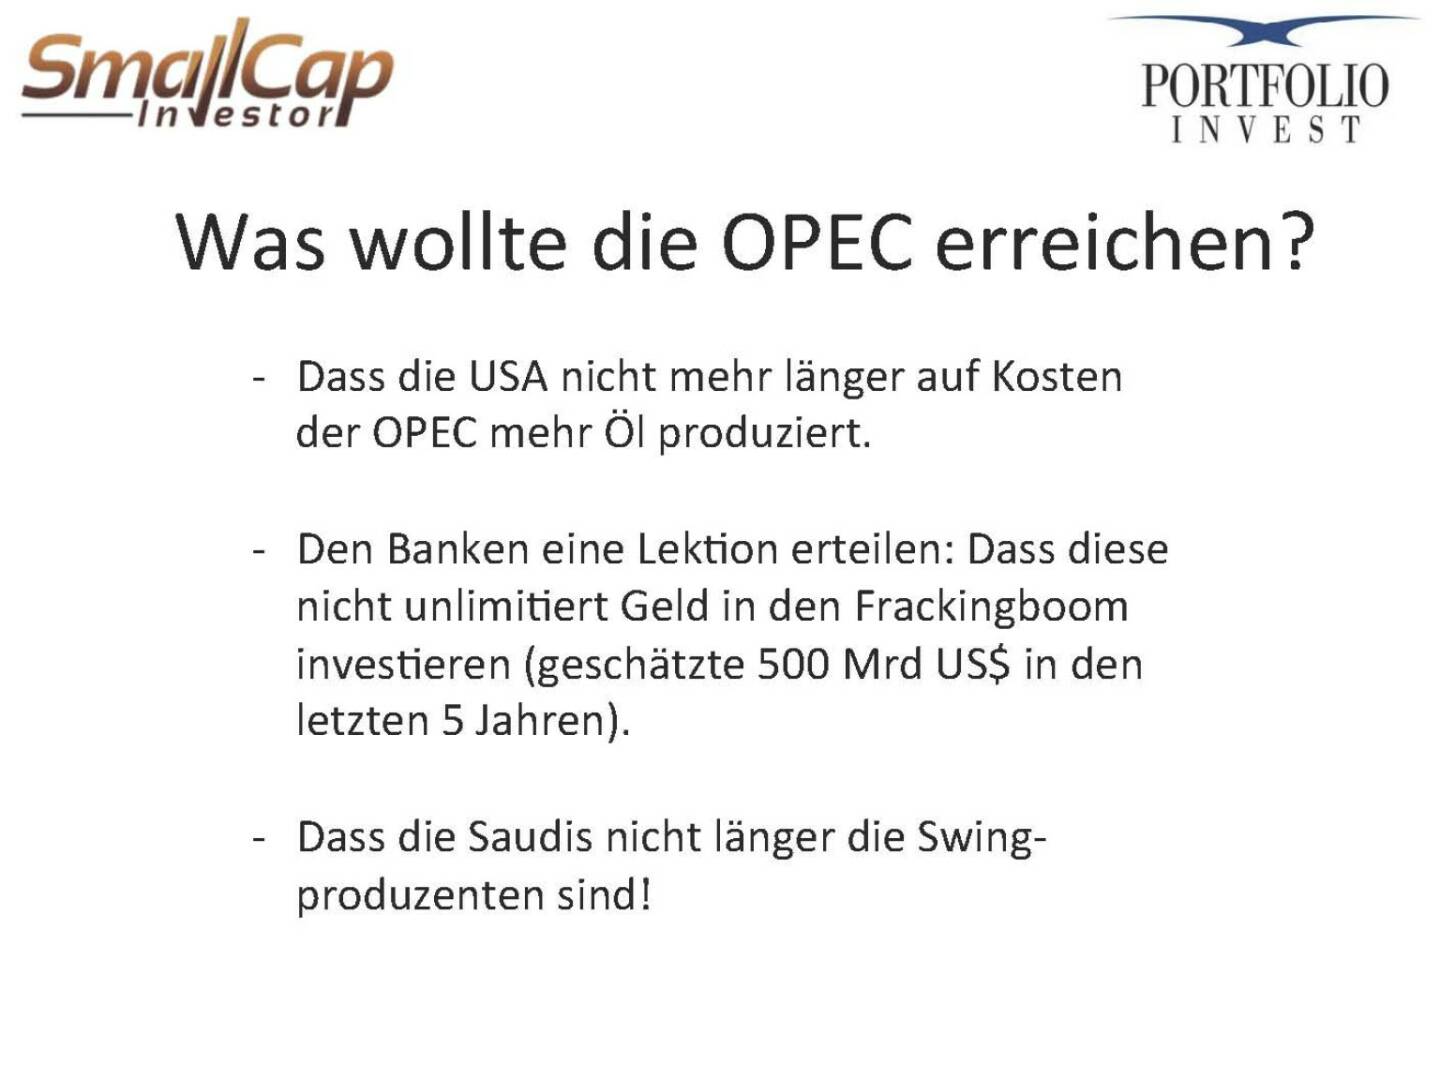 Was wollte die OPEC erreichen?